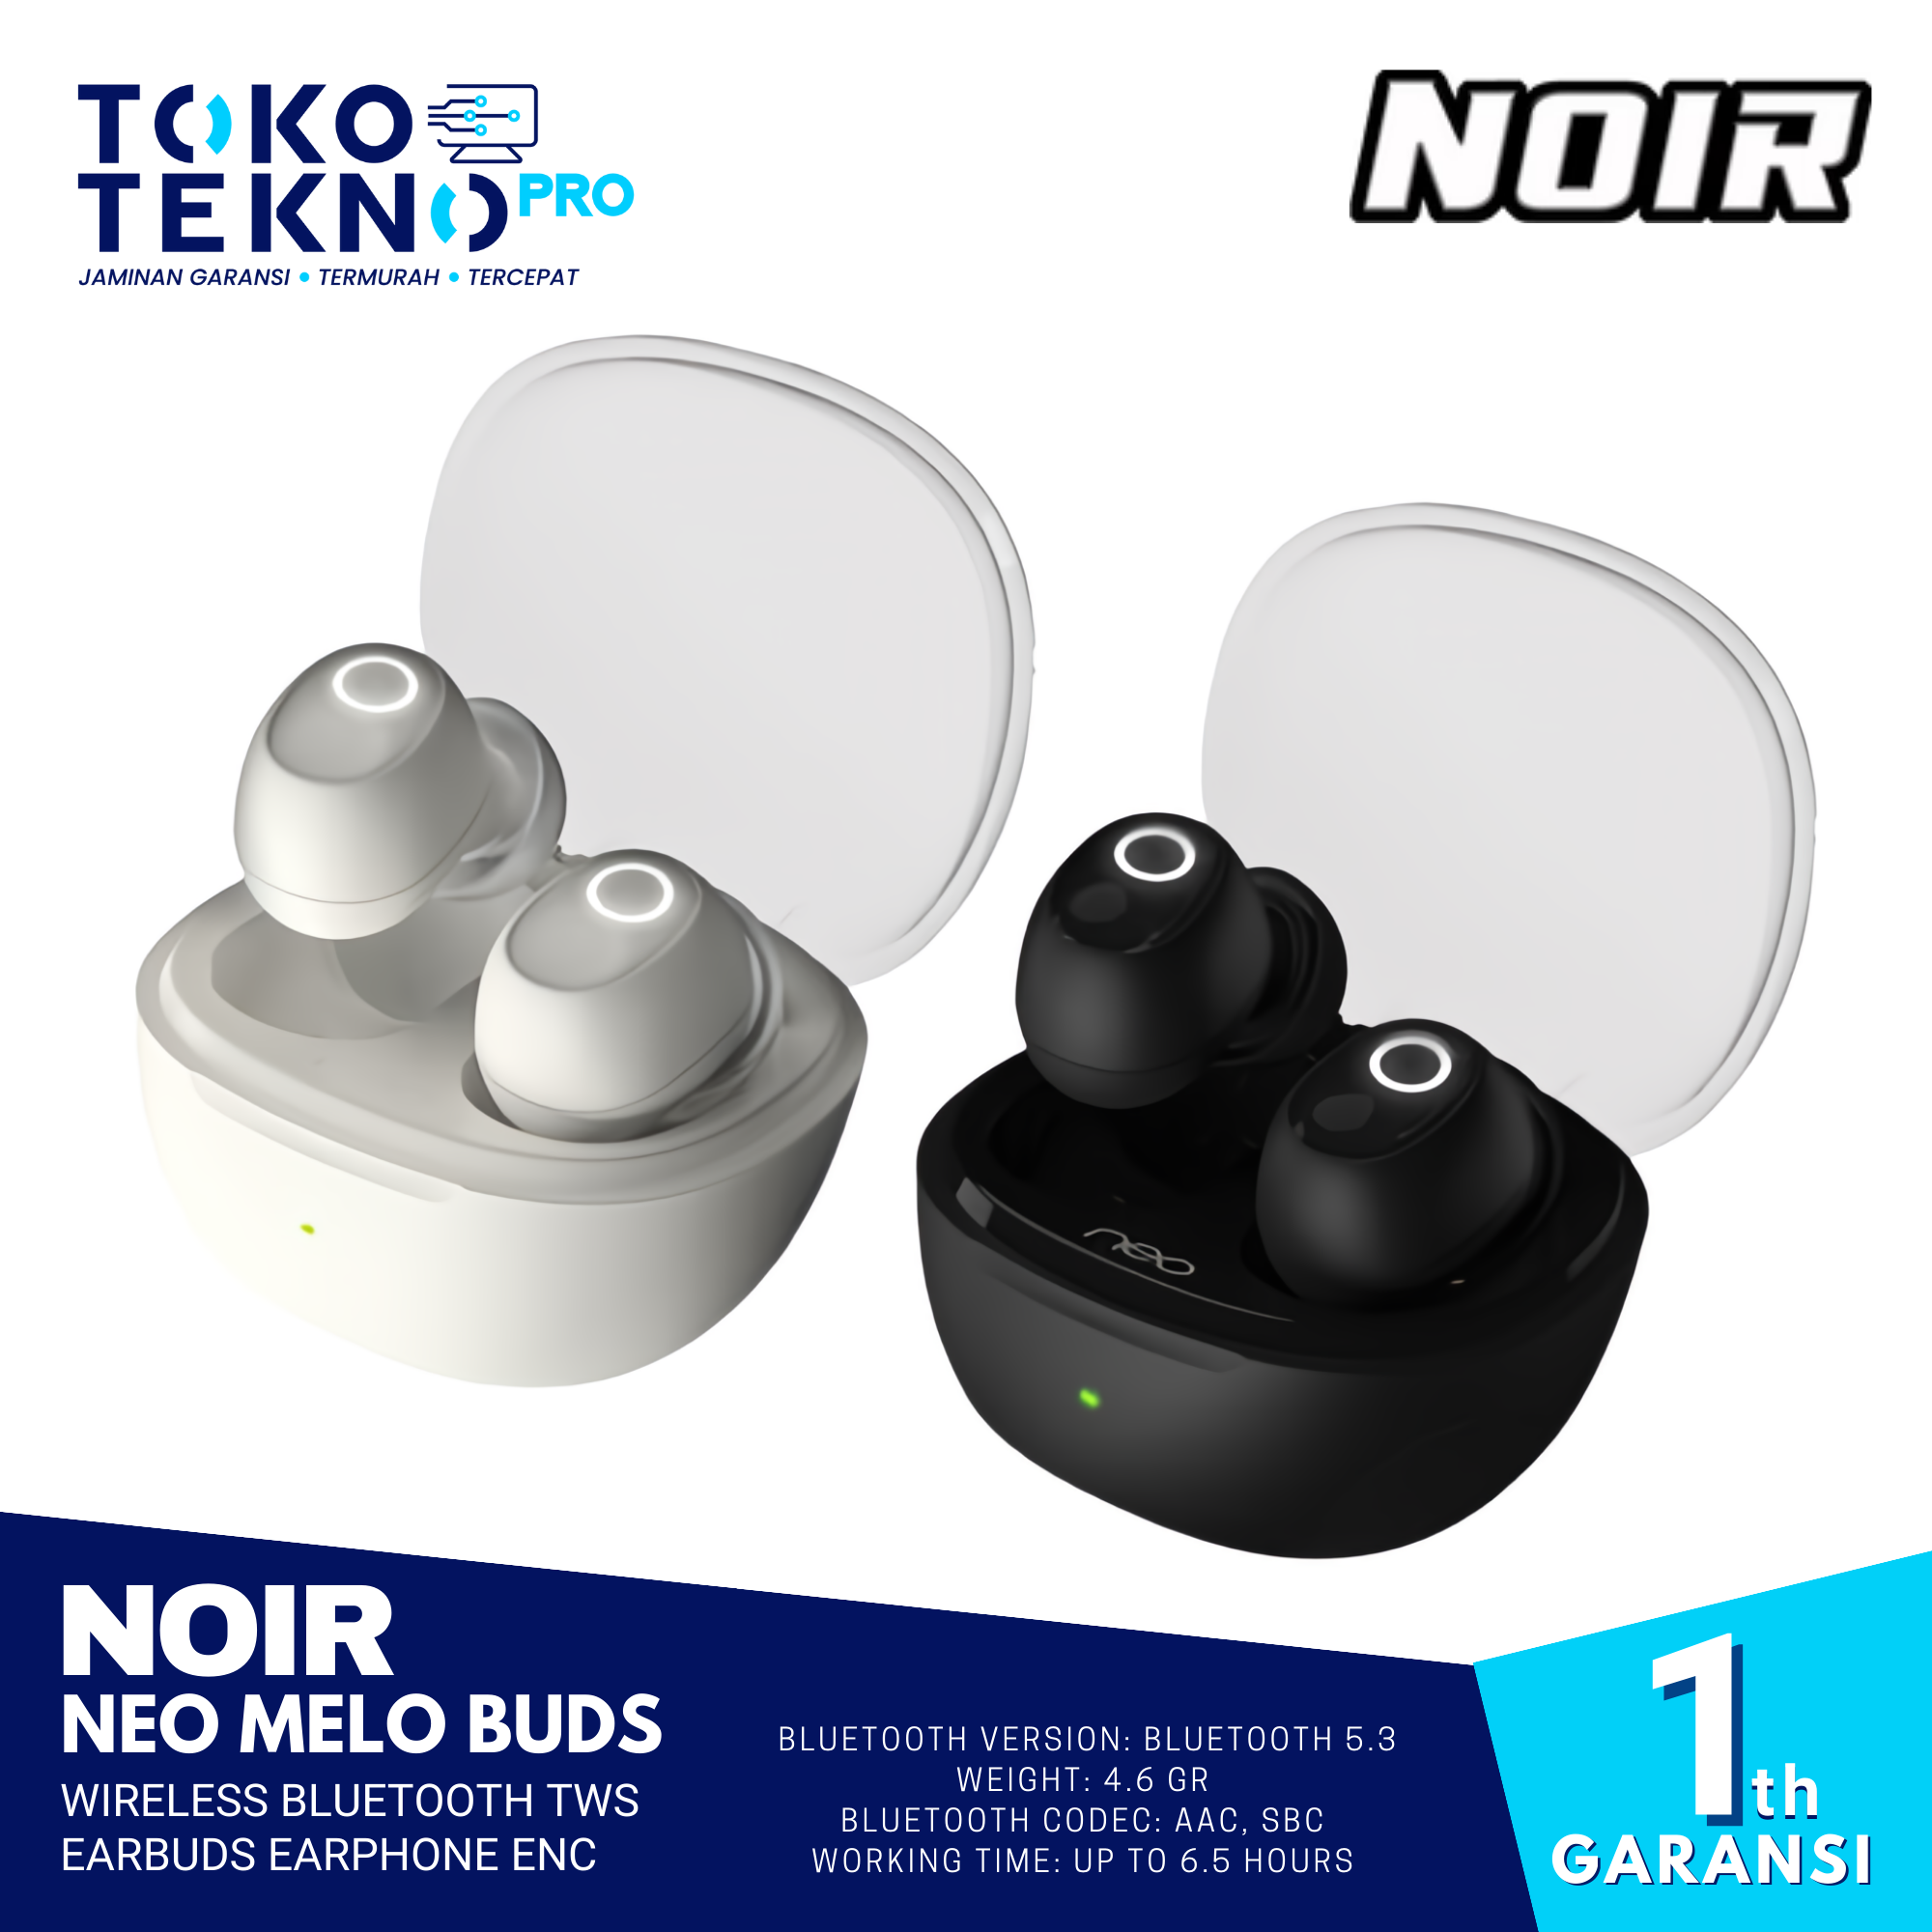 Noir Neo Melo Buds Wireless Bluetooth TWS Earbuds Earphone ENC